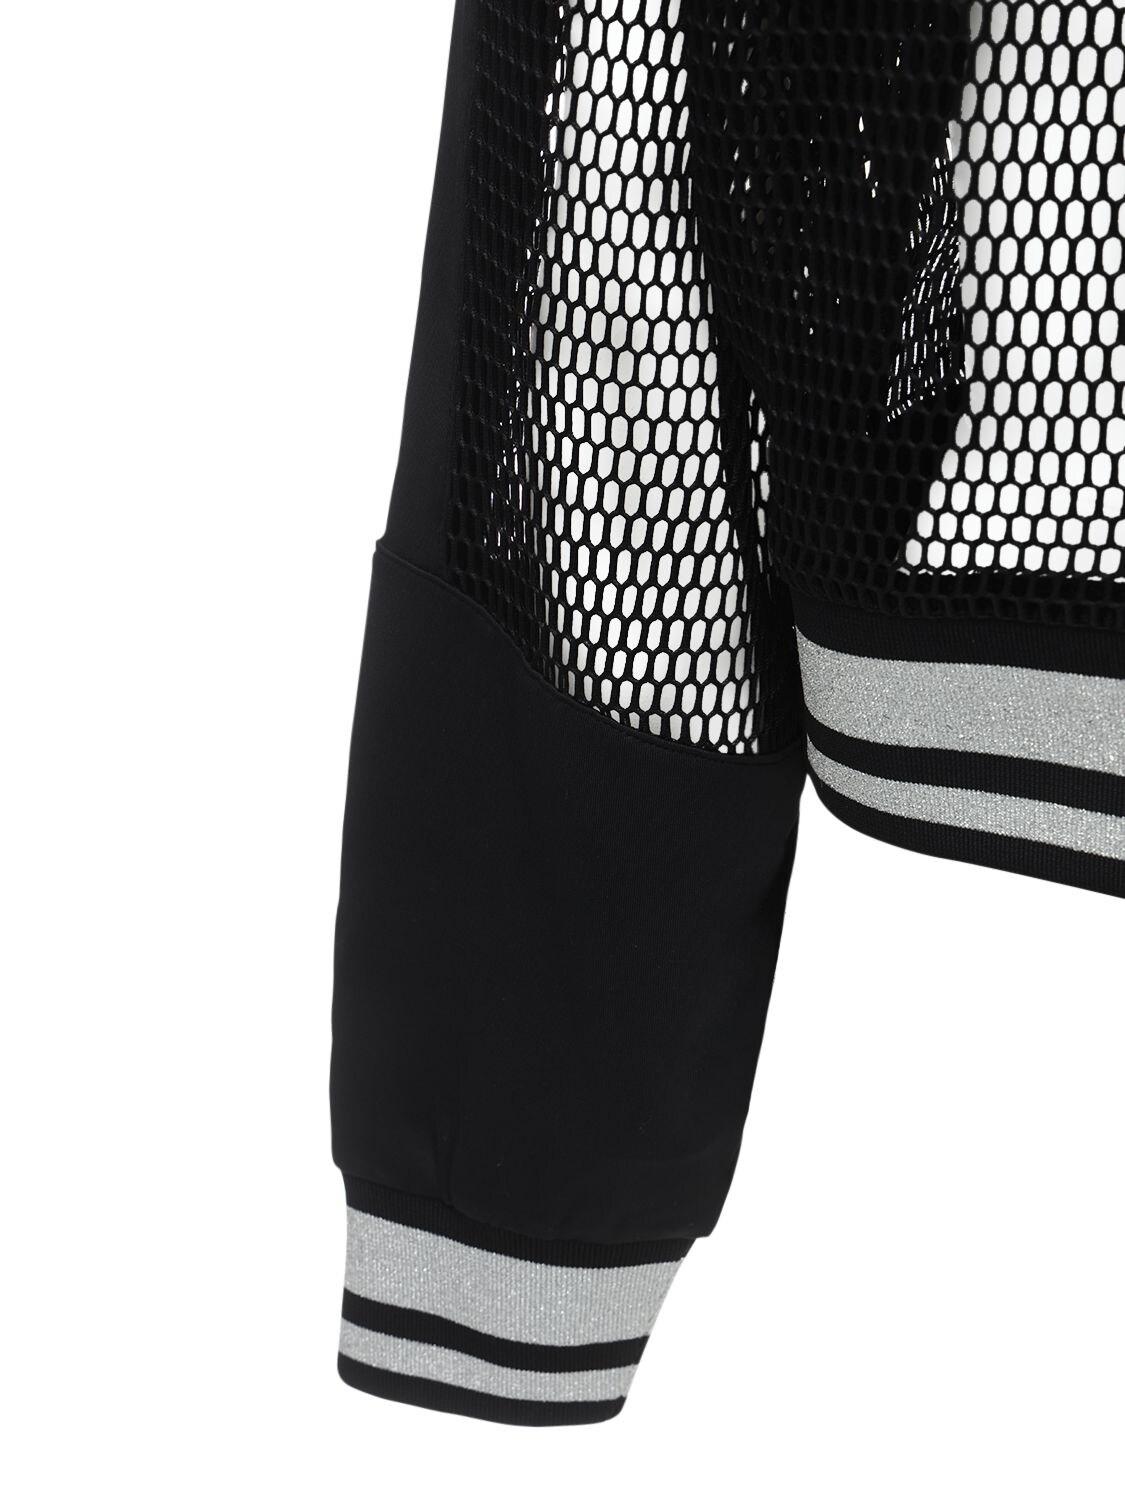 Fila Gia Cropped Jacket, Net Pattern in Black - Lyst